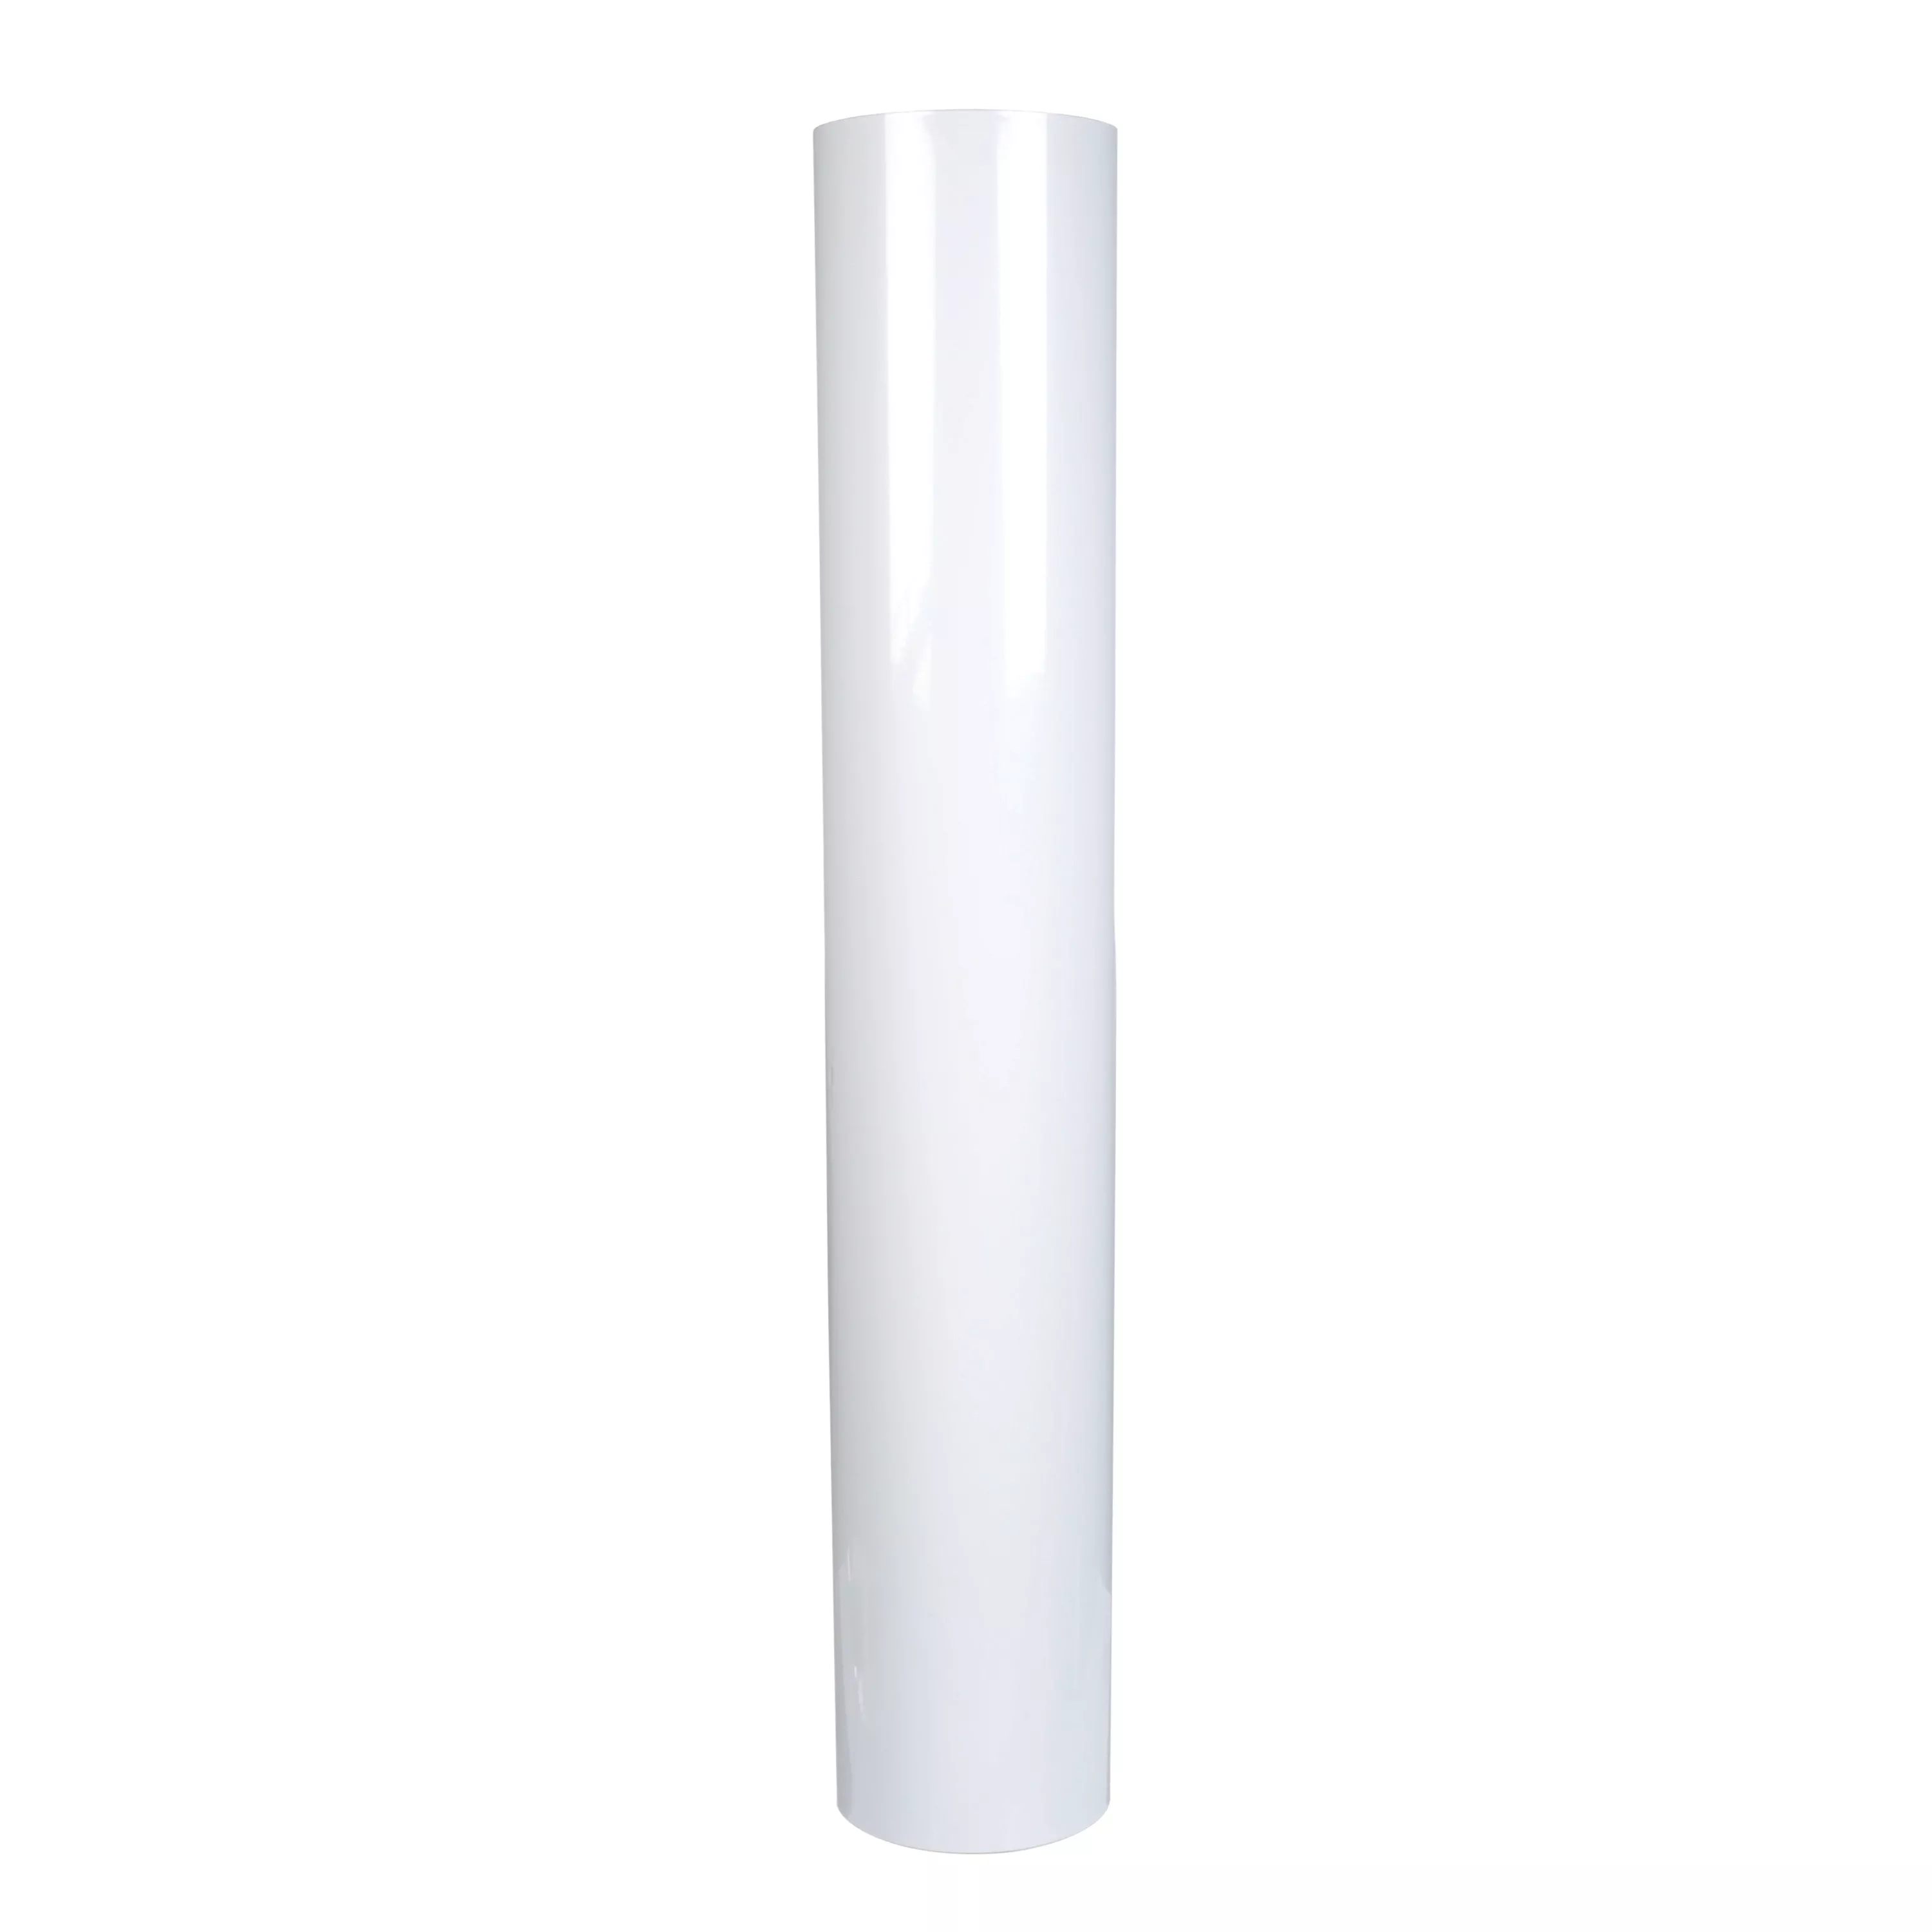 3M™ VentureClad™ Insulation Jacketing Tape 1577CW-WM, White, 35.5 in x
50 yd, 1 Roll/Case